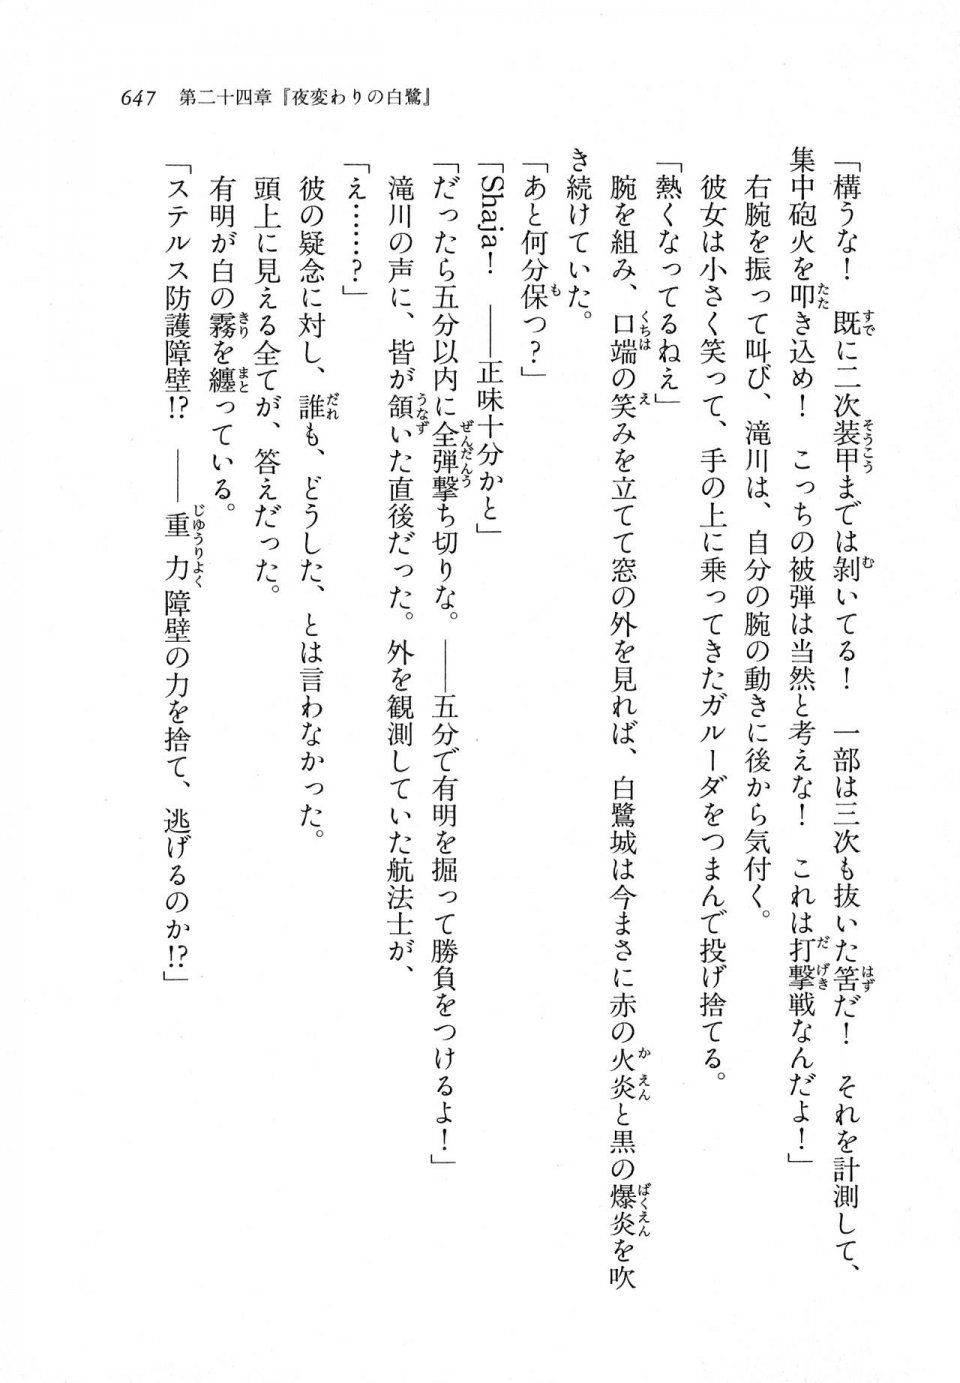 Kyoukai Senjou no Horizon LN Vol 11(5A) - Photo #647